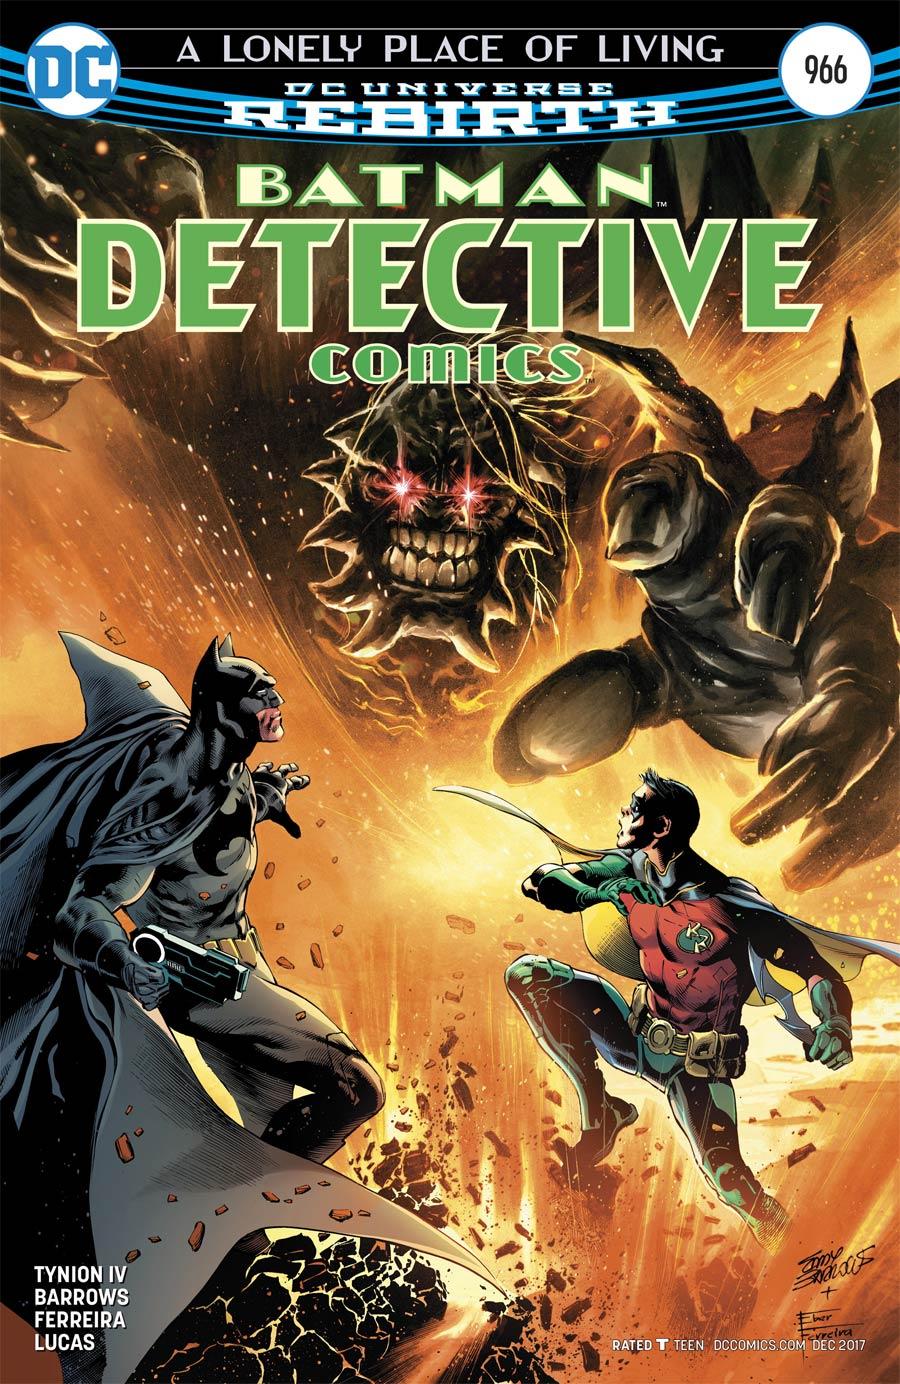 Detective Comics Vol. 2 #966